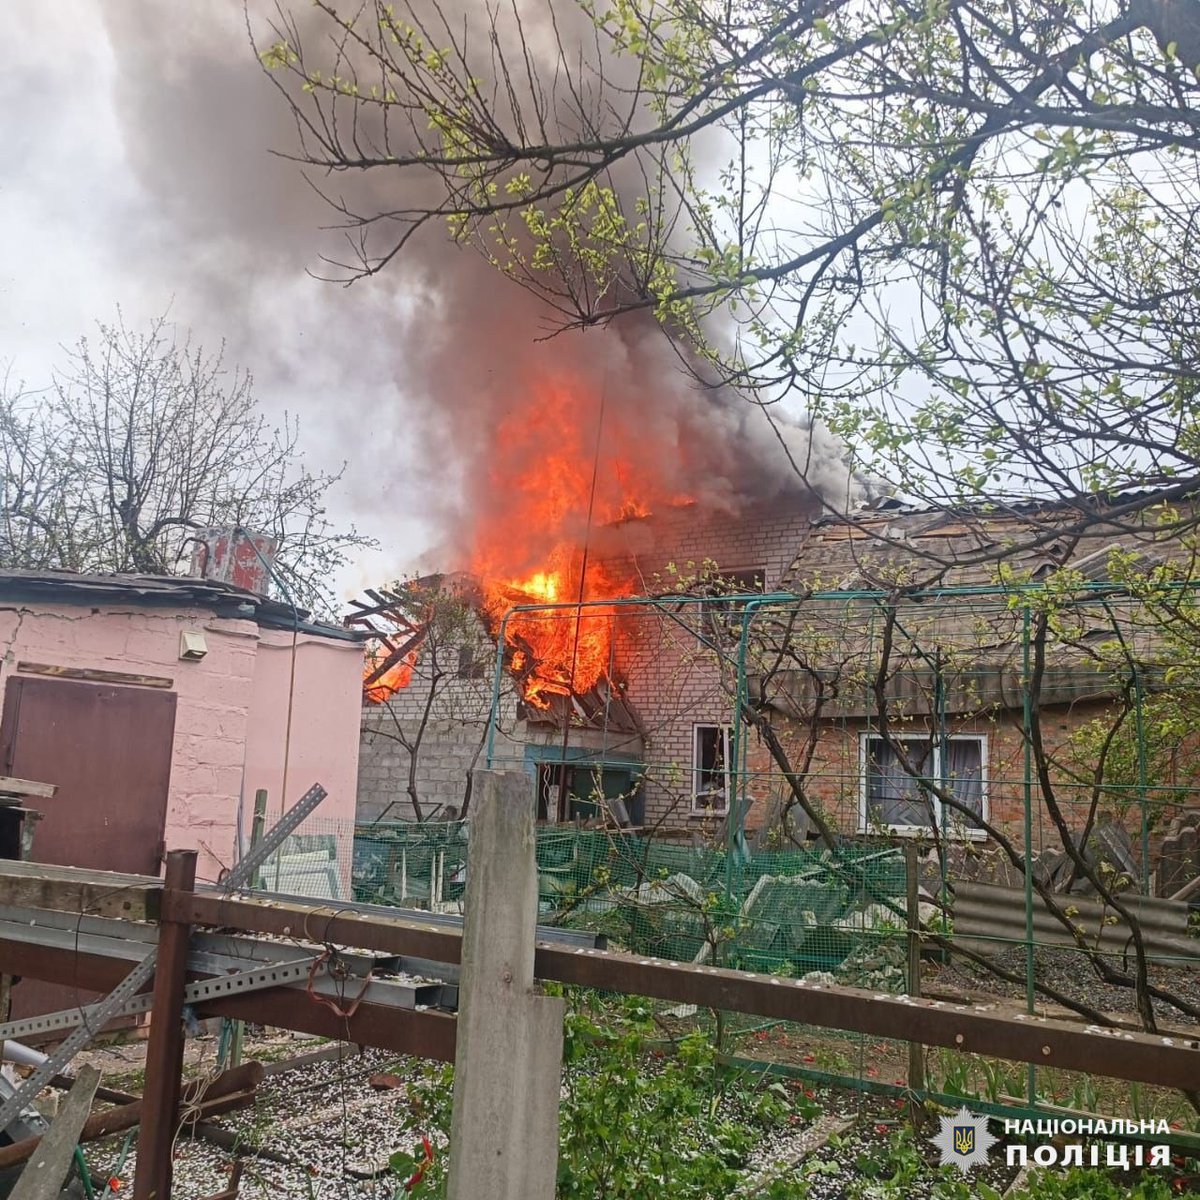 3 deti a ďalšia osoba zranená v dôsledku ruského náletu v Derhachi v Charkovskej oblasti